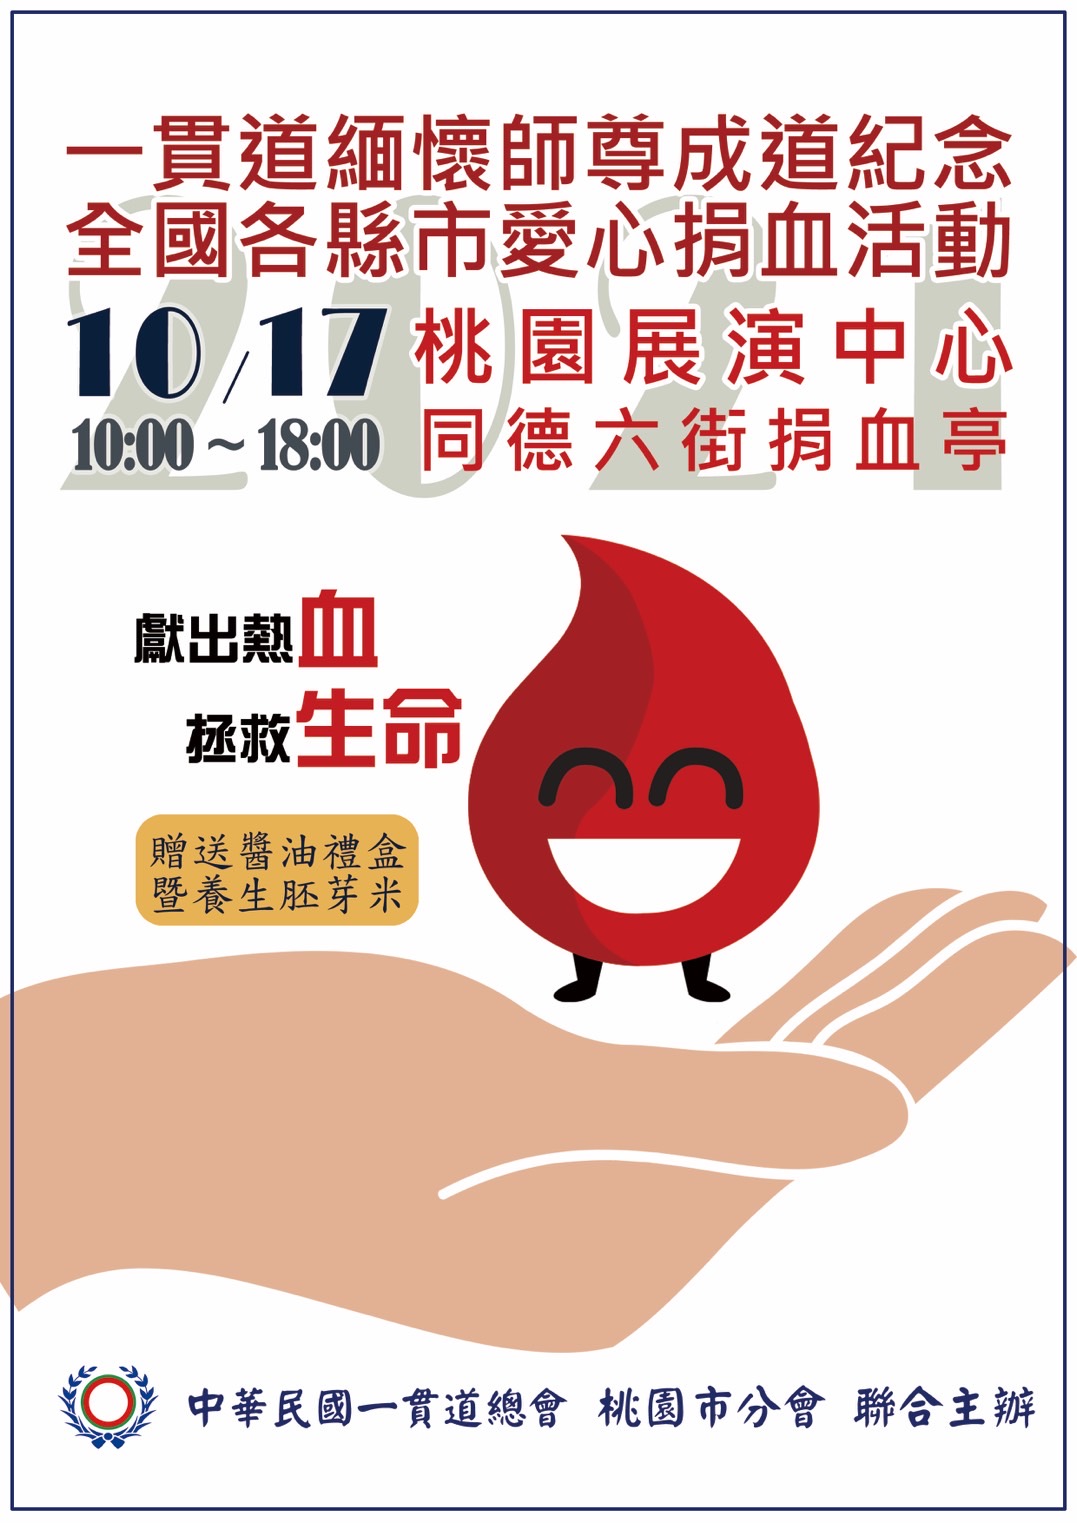 [情報] 10/17(日)展演中心(同德六街)捐血送好禮